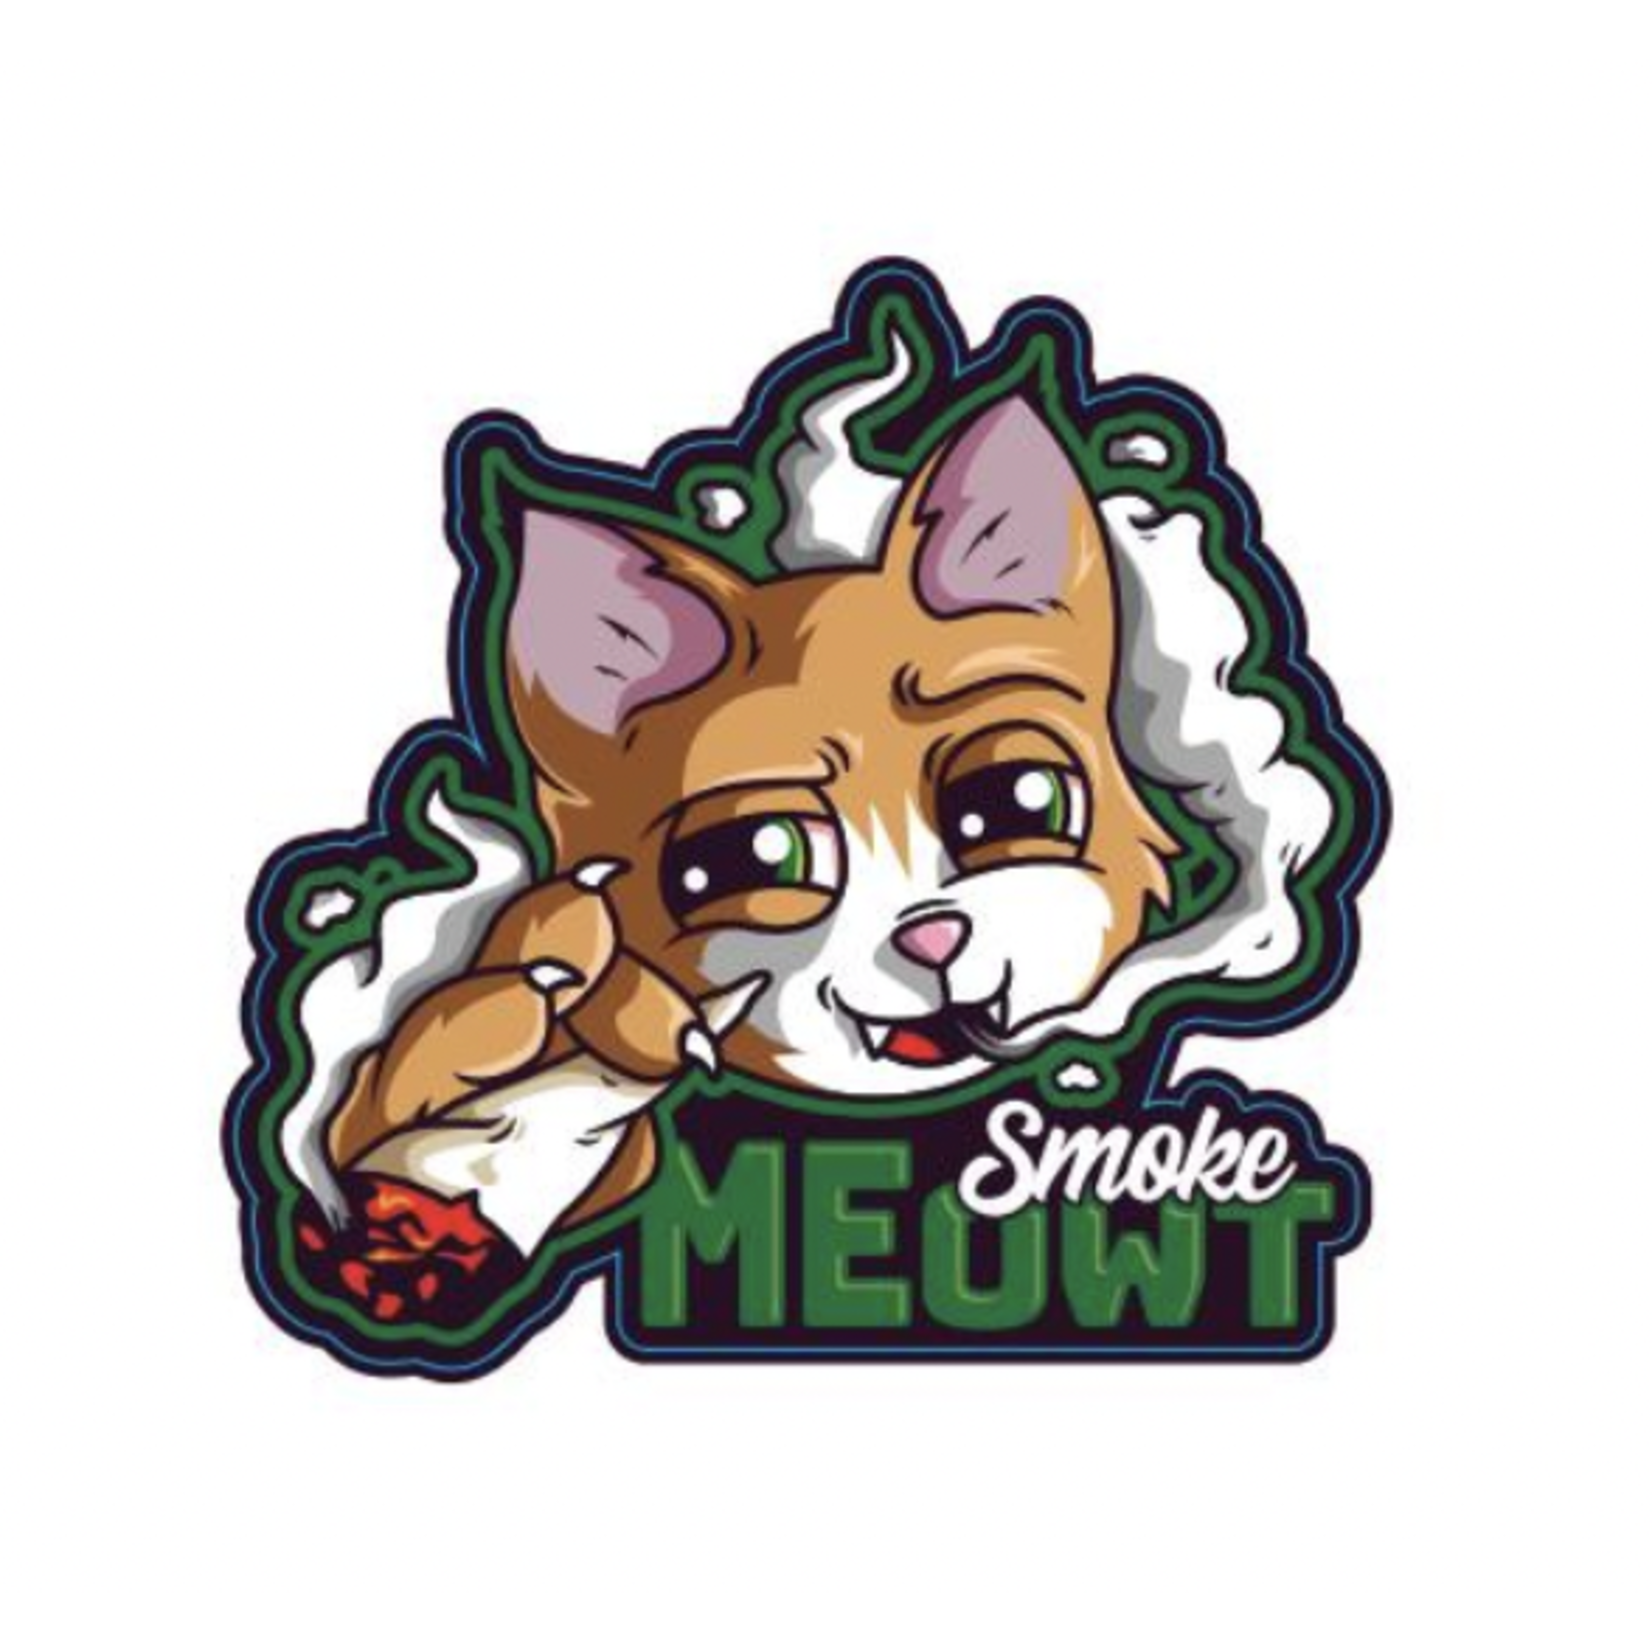 STICKER PACK Cannabicat - Smoke Meowt - Sticker - Small